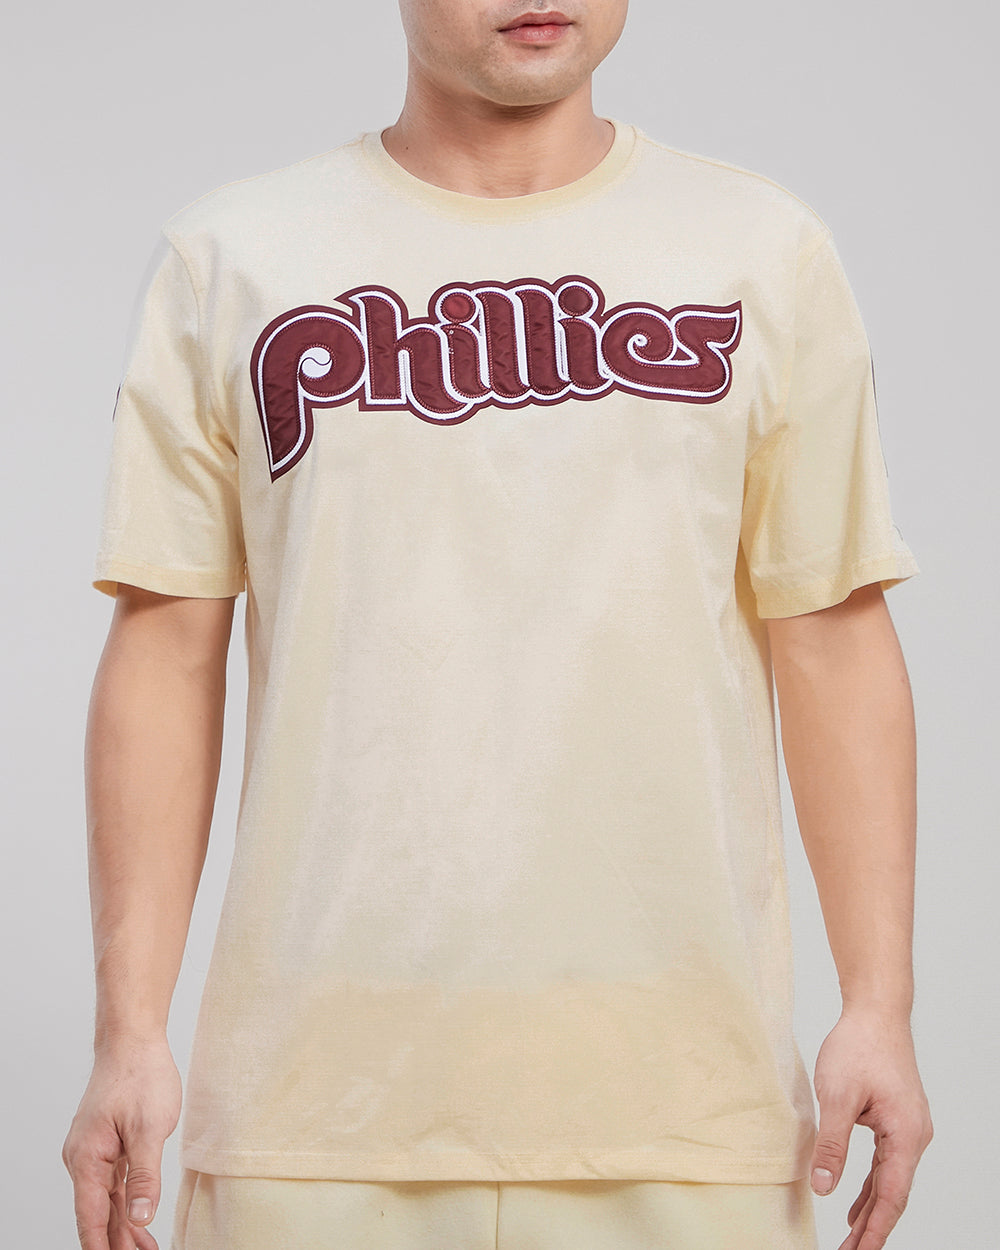 Men's Pro Standard Light Blue/Burgundy Philadelphia Phillies Taping T-Shirt